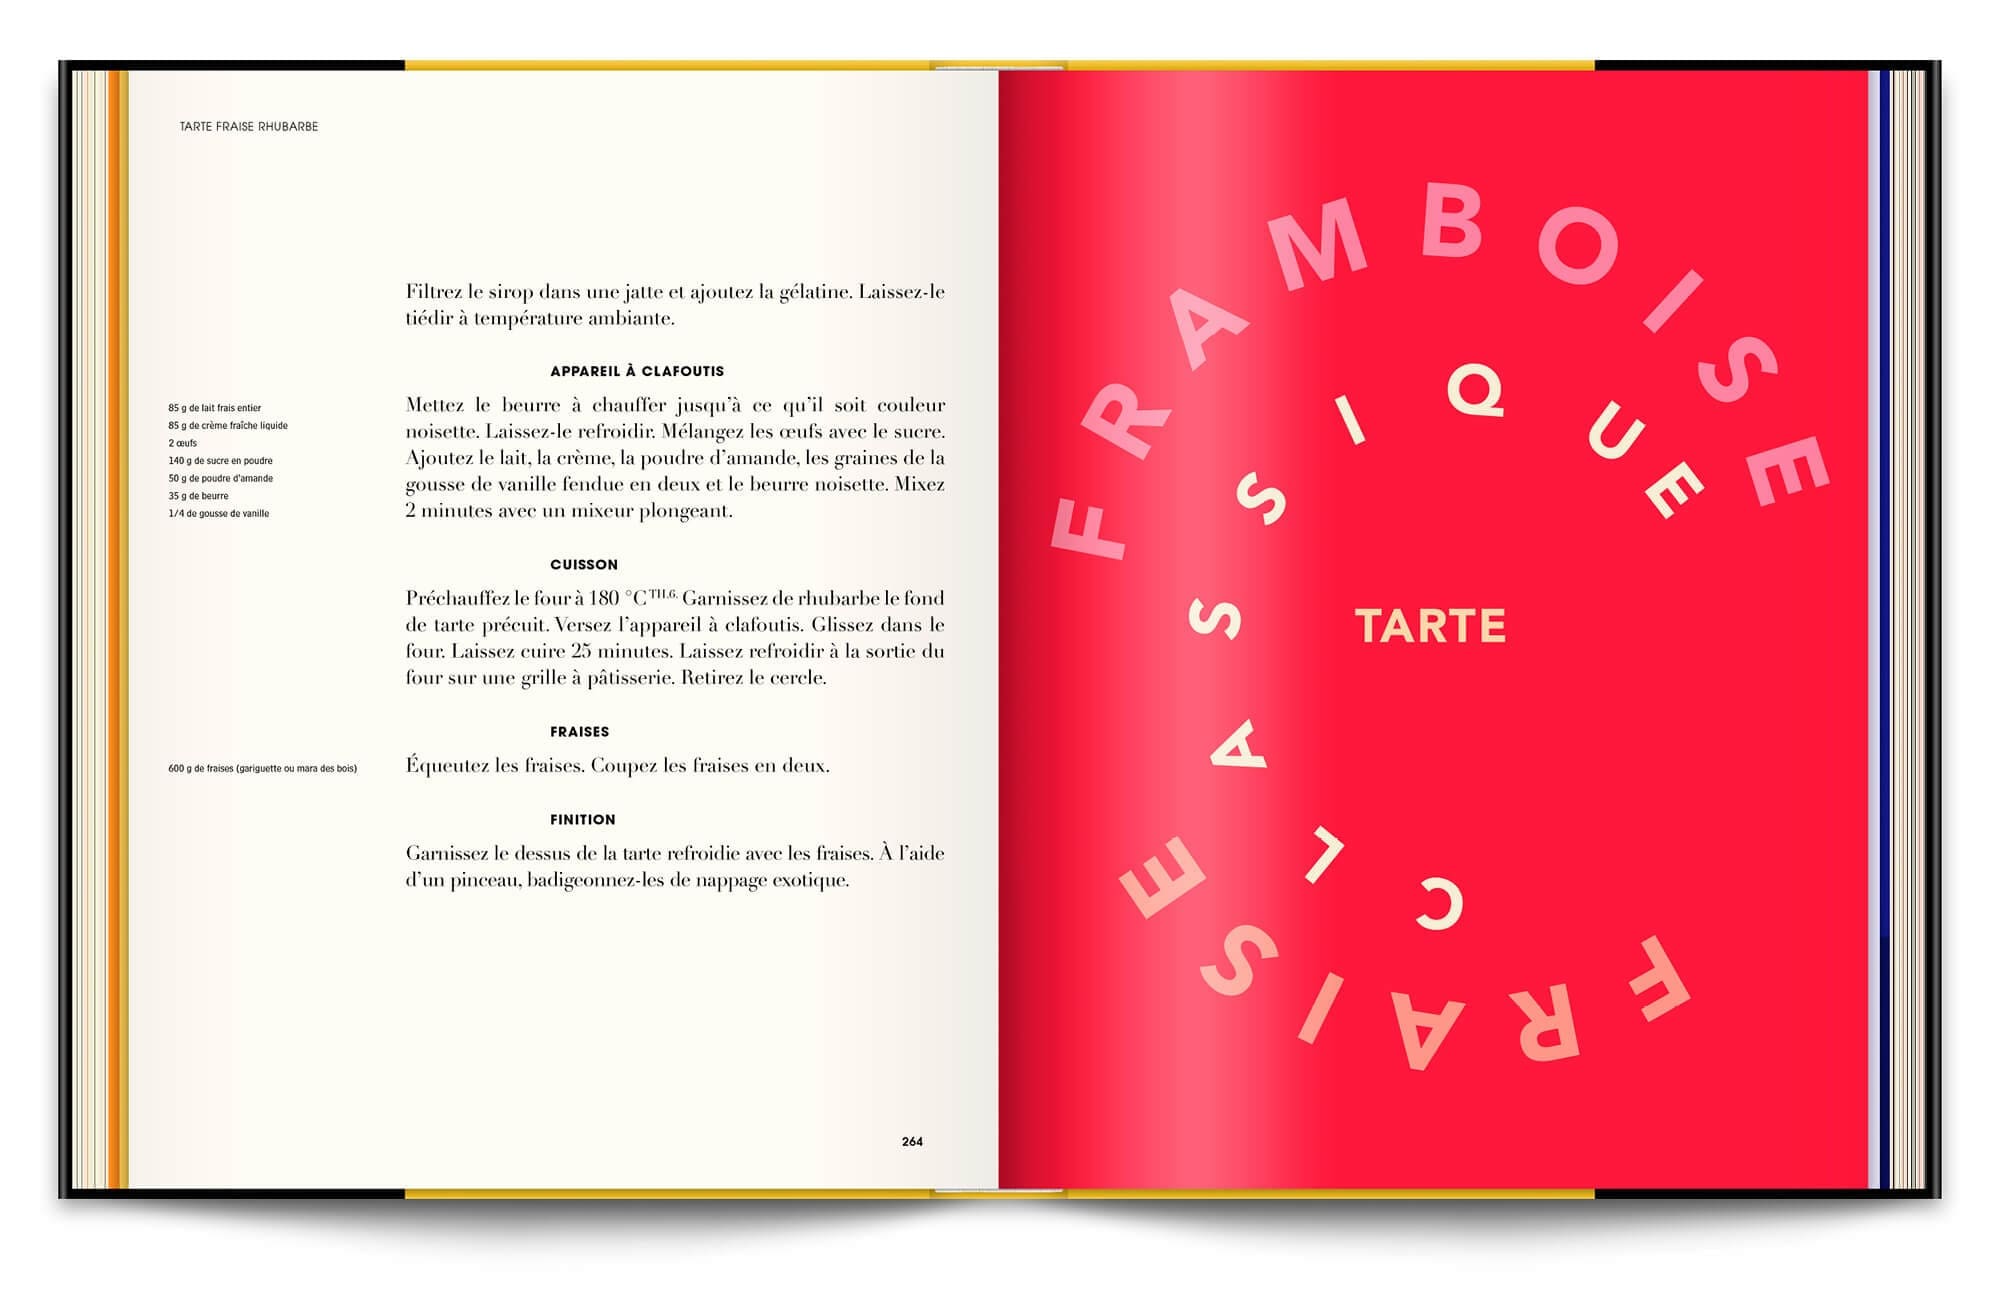 Livre Infiniment de Pierre Hermé, jeu typographique et couleur pop pour les pages de recettes, design éditorial et mise en page IchetKar